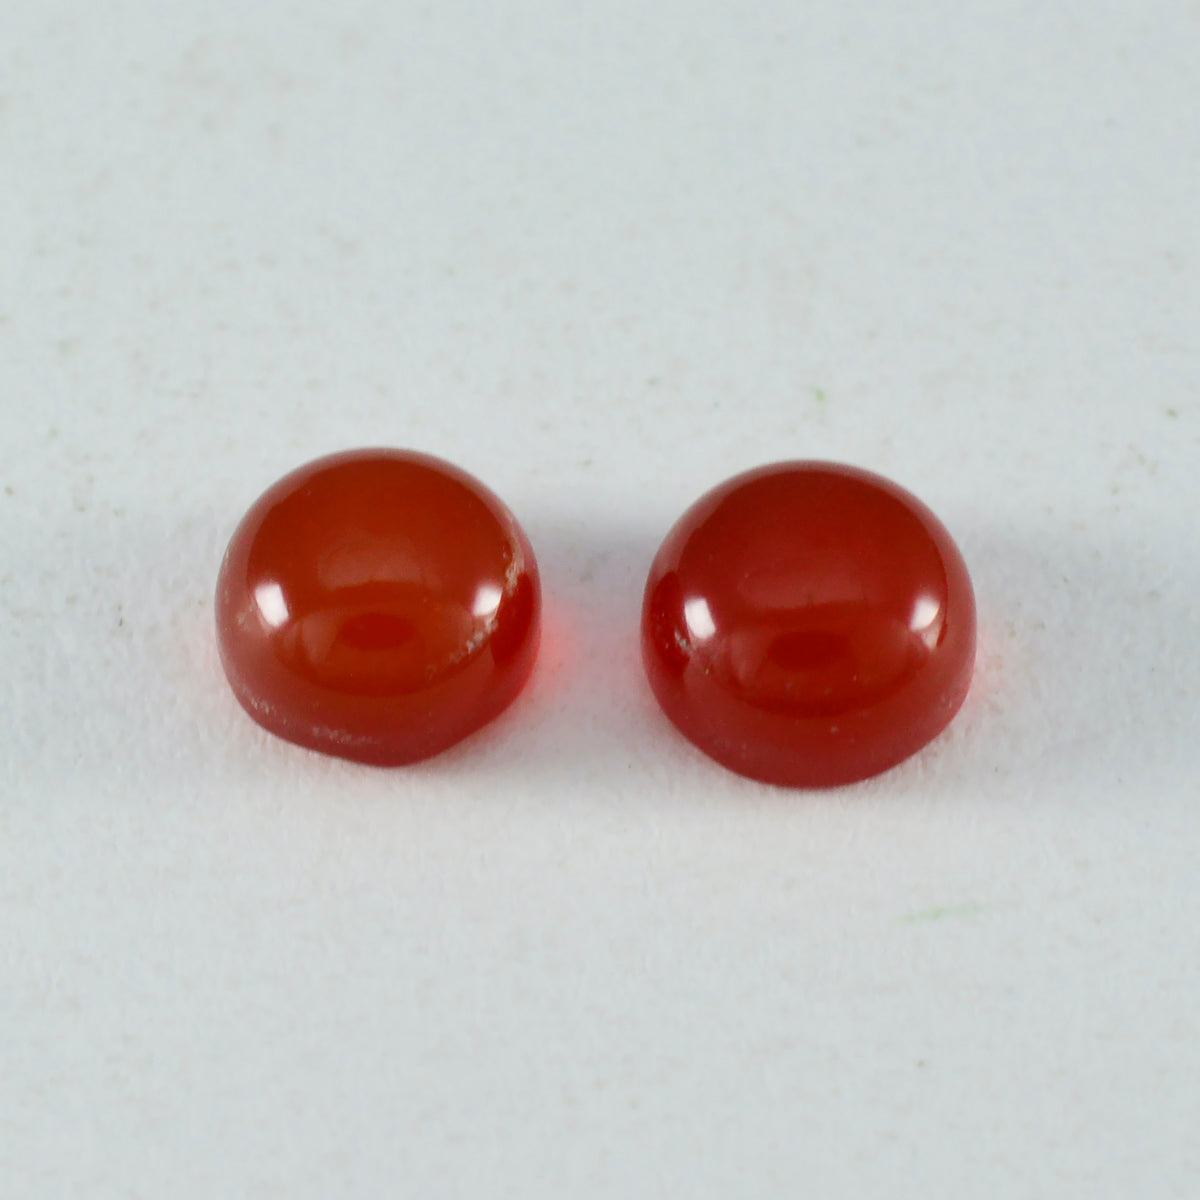 Riyogems 1 pieza cabujón de ónix rojo 11x11 mm forma redonda gemas sueltas de increíble calidad